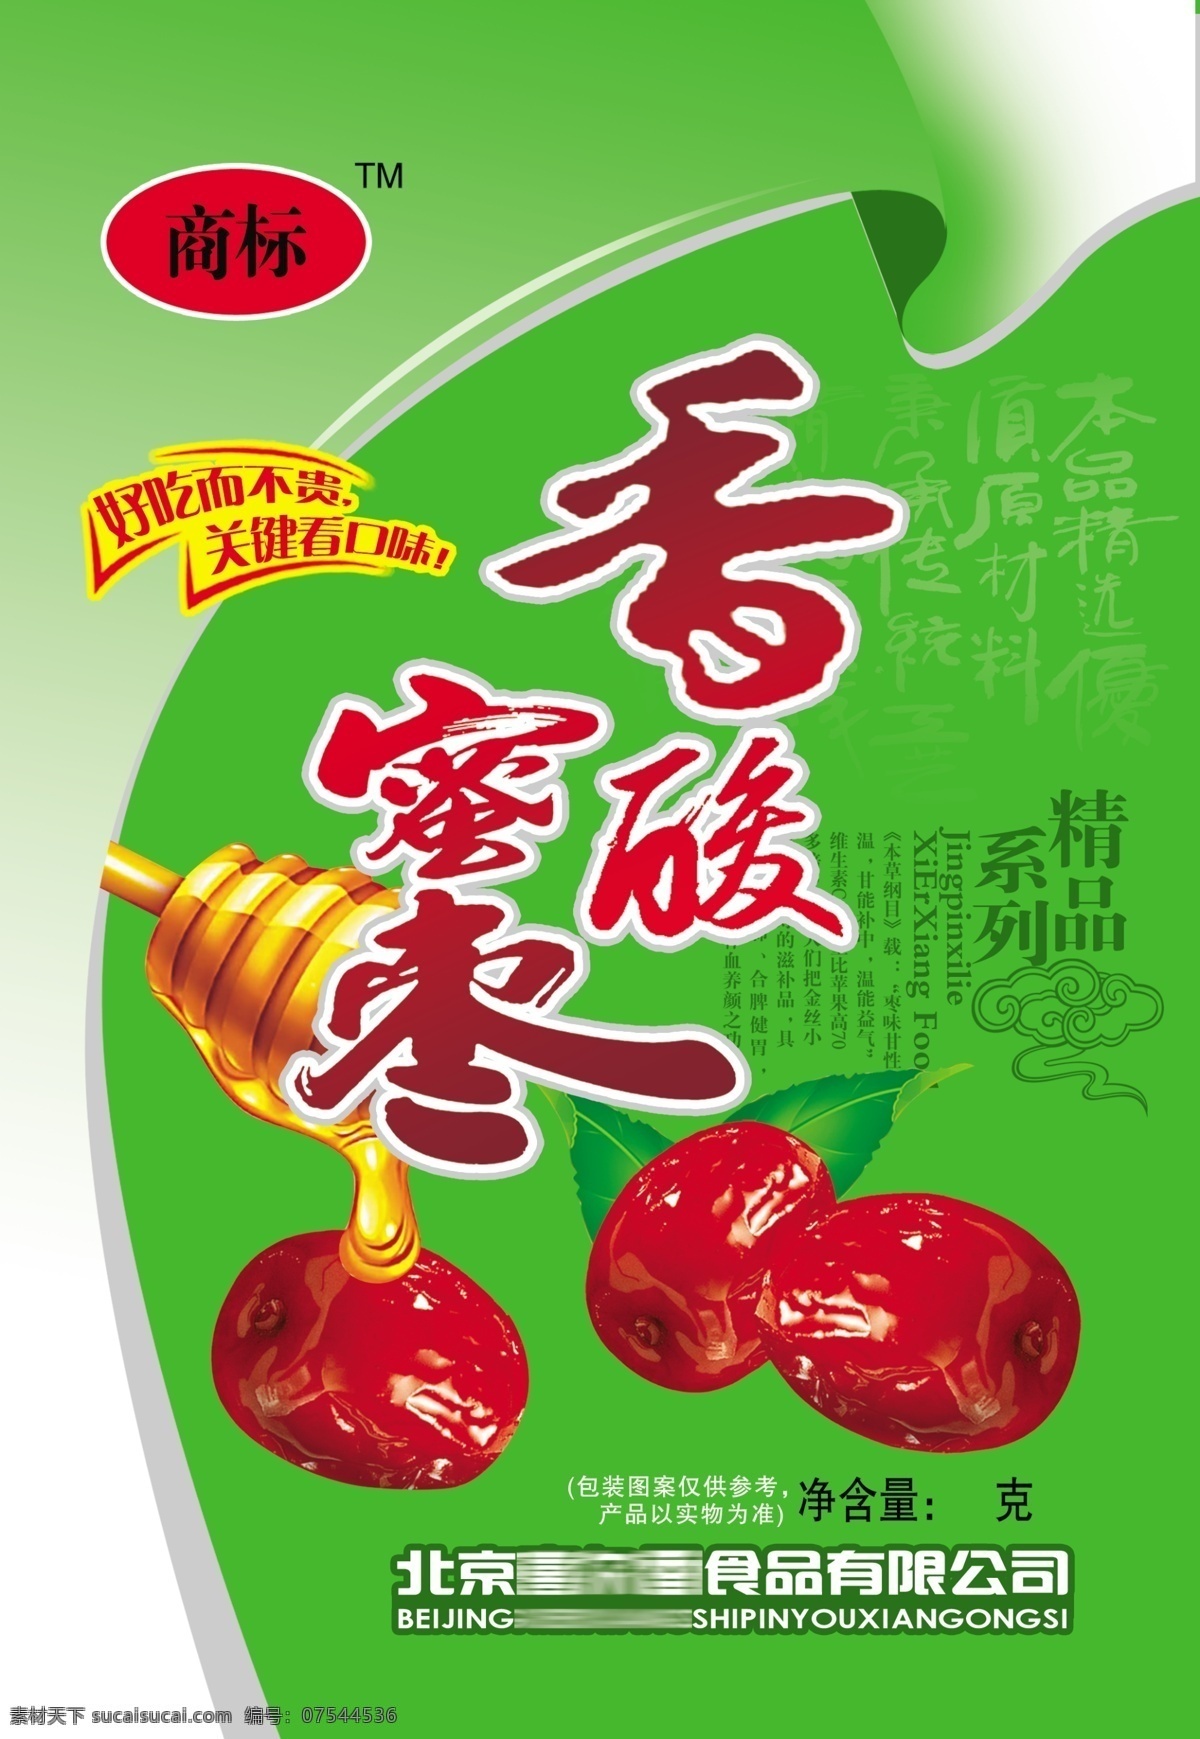 香蜜酸枣 枣实物图 蜂蜜 小食品包装 干货包装 包装设计